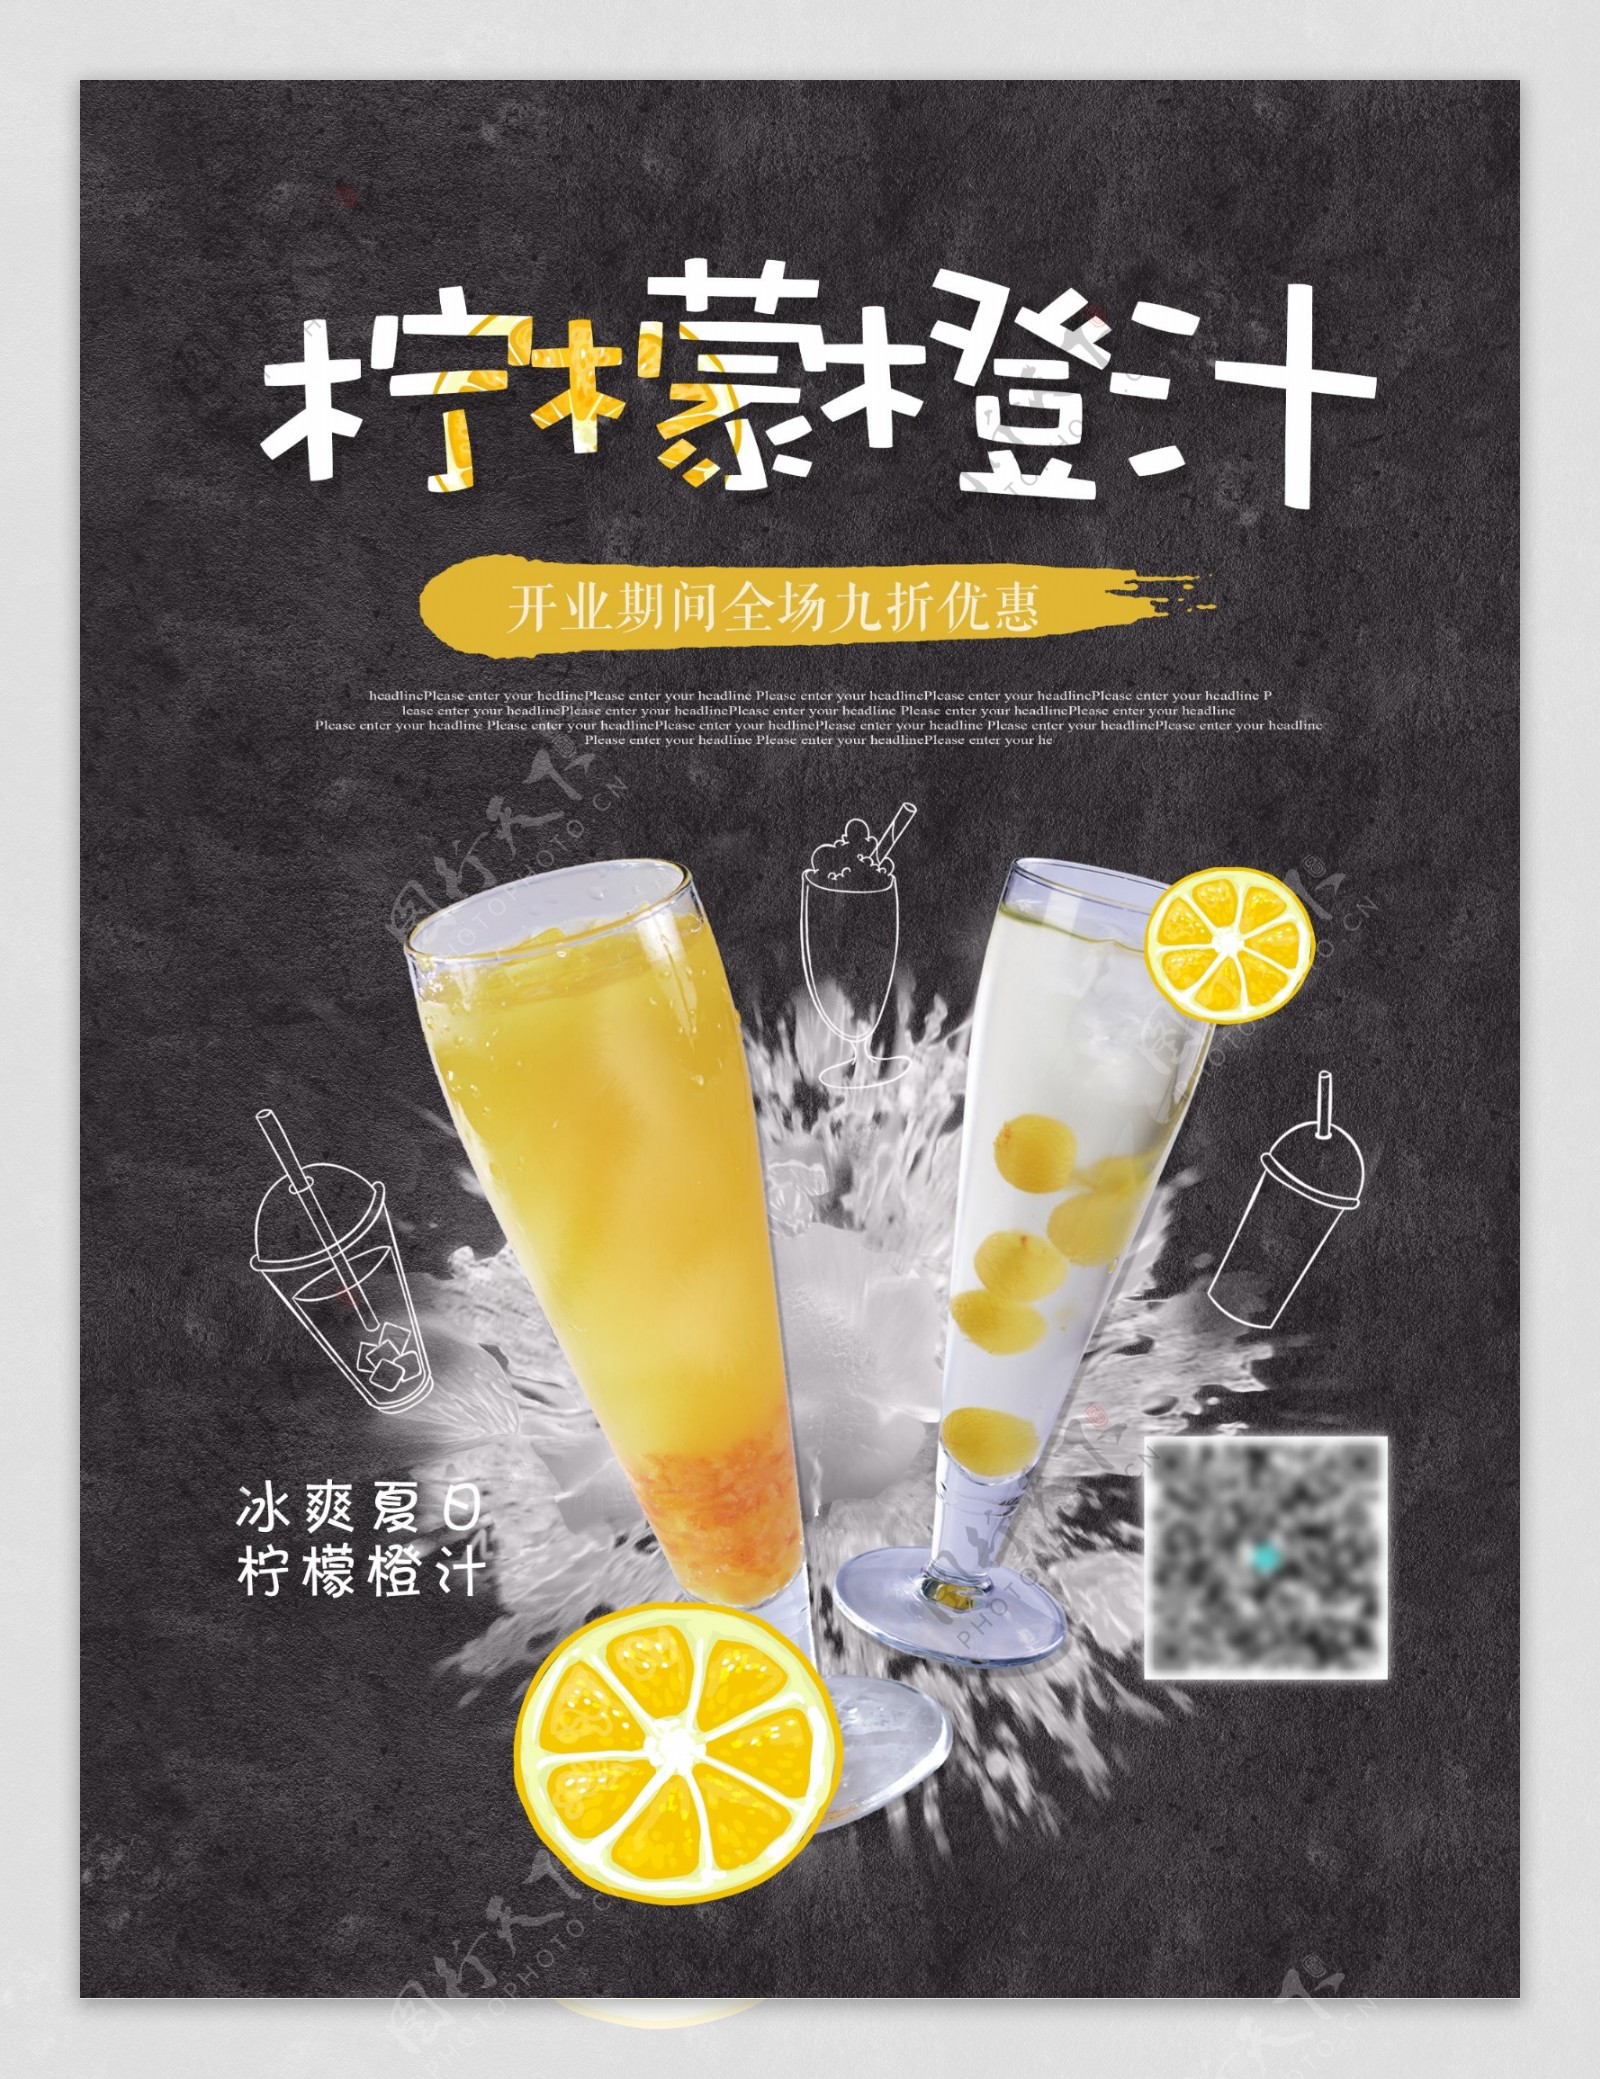 夏日冷饮柠檬橙汁优惠促销海报高清psd